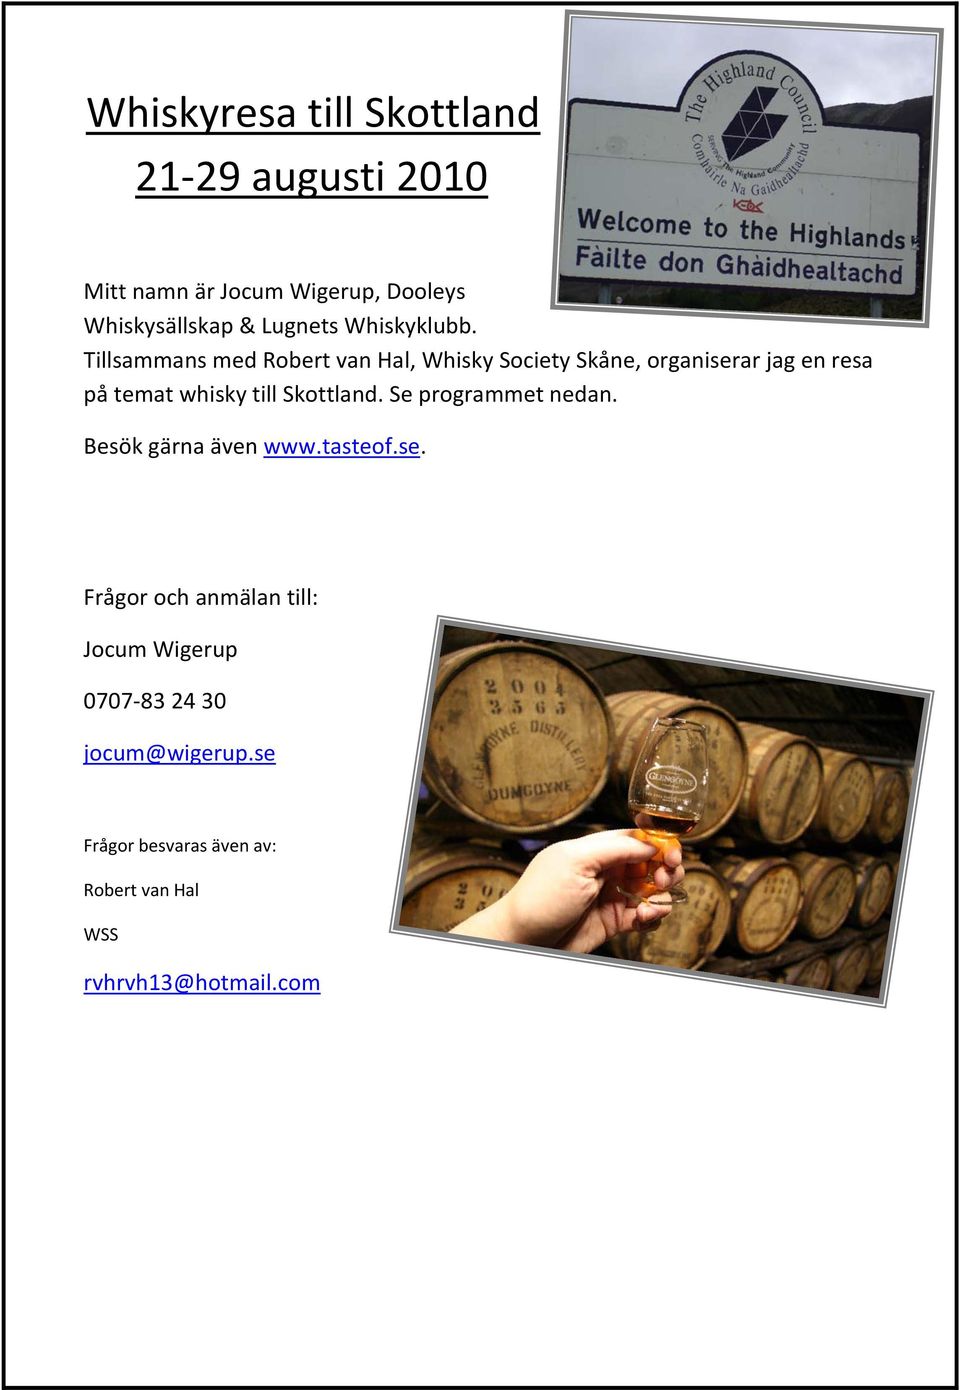 Tillsammans med Robert van Hal, Whisky Society Skåne, organiserar jag en resa på temat whisky till